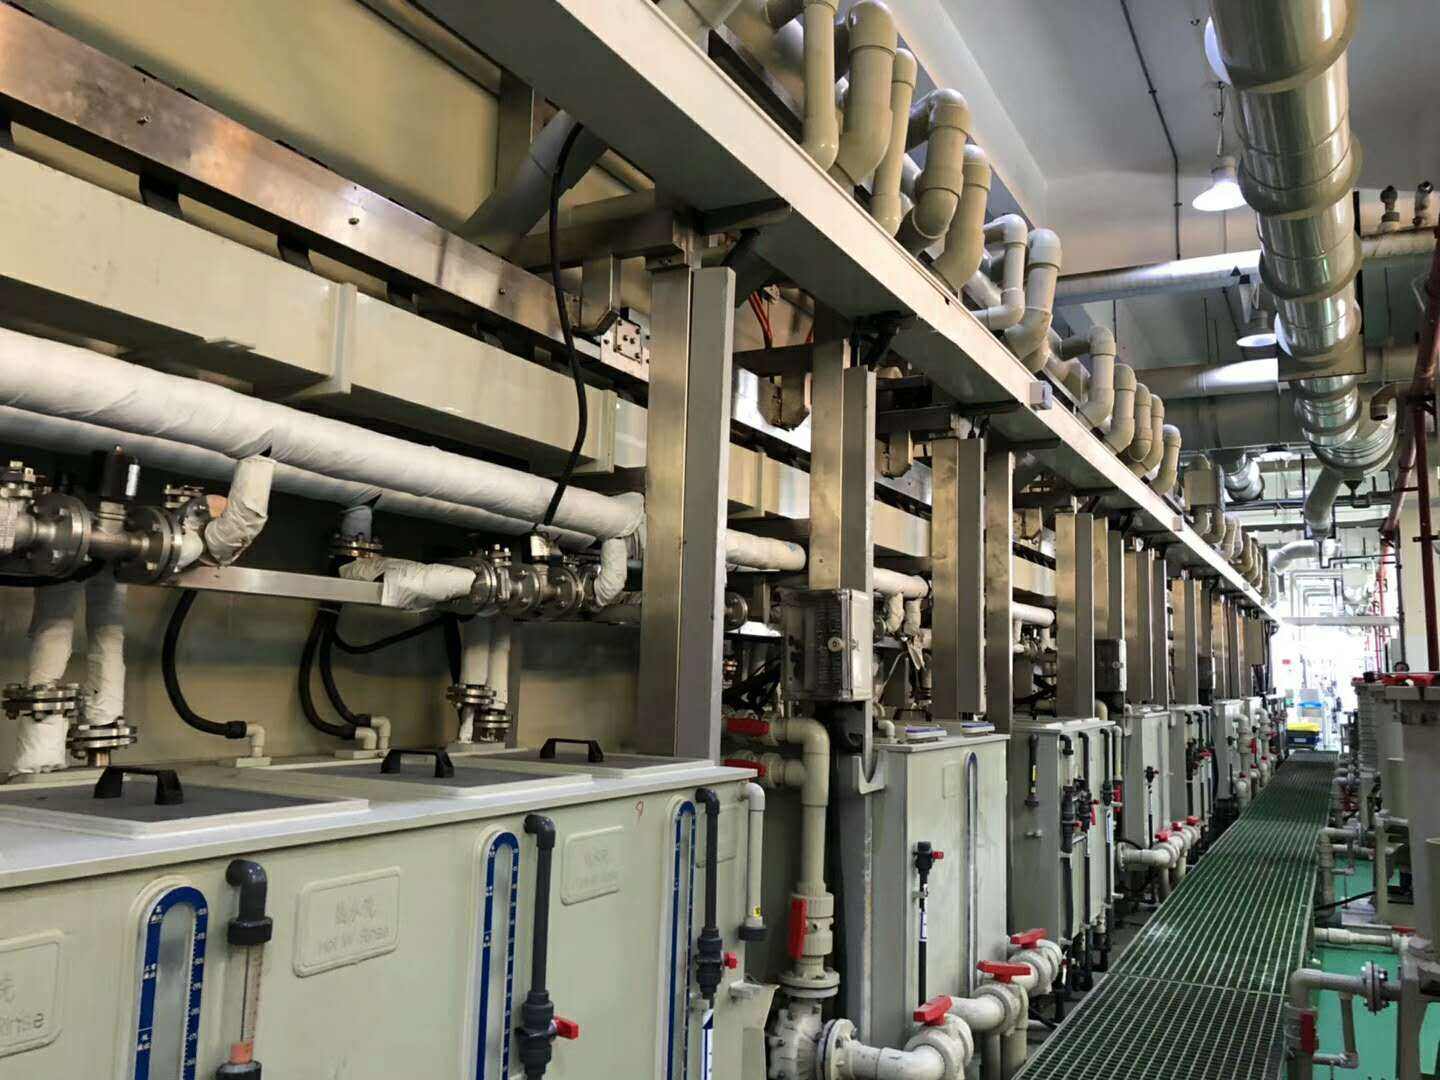 东莞石碣镇工厂设备拆除回收-饮料生产线回收-水泥厂回收